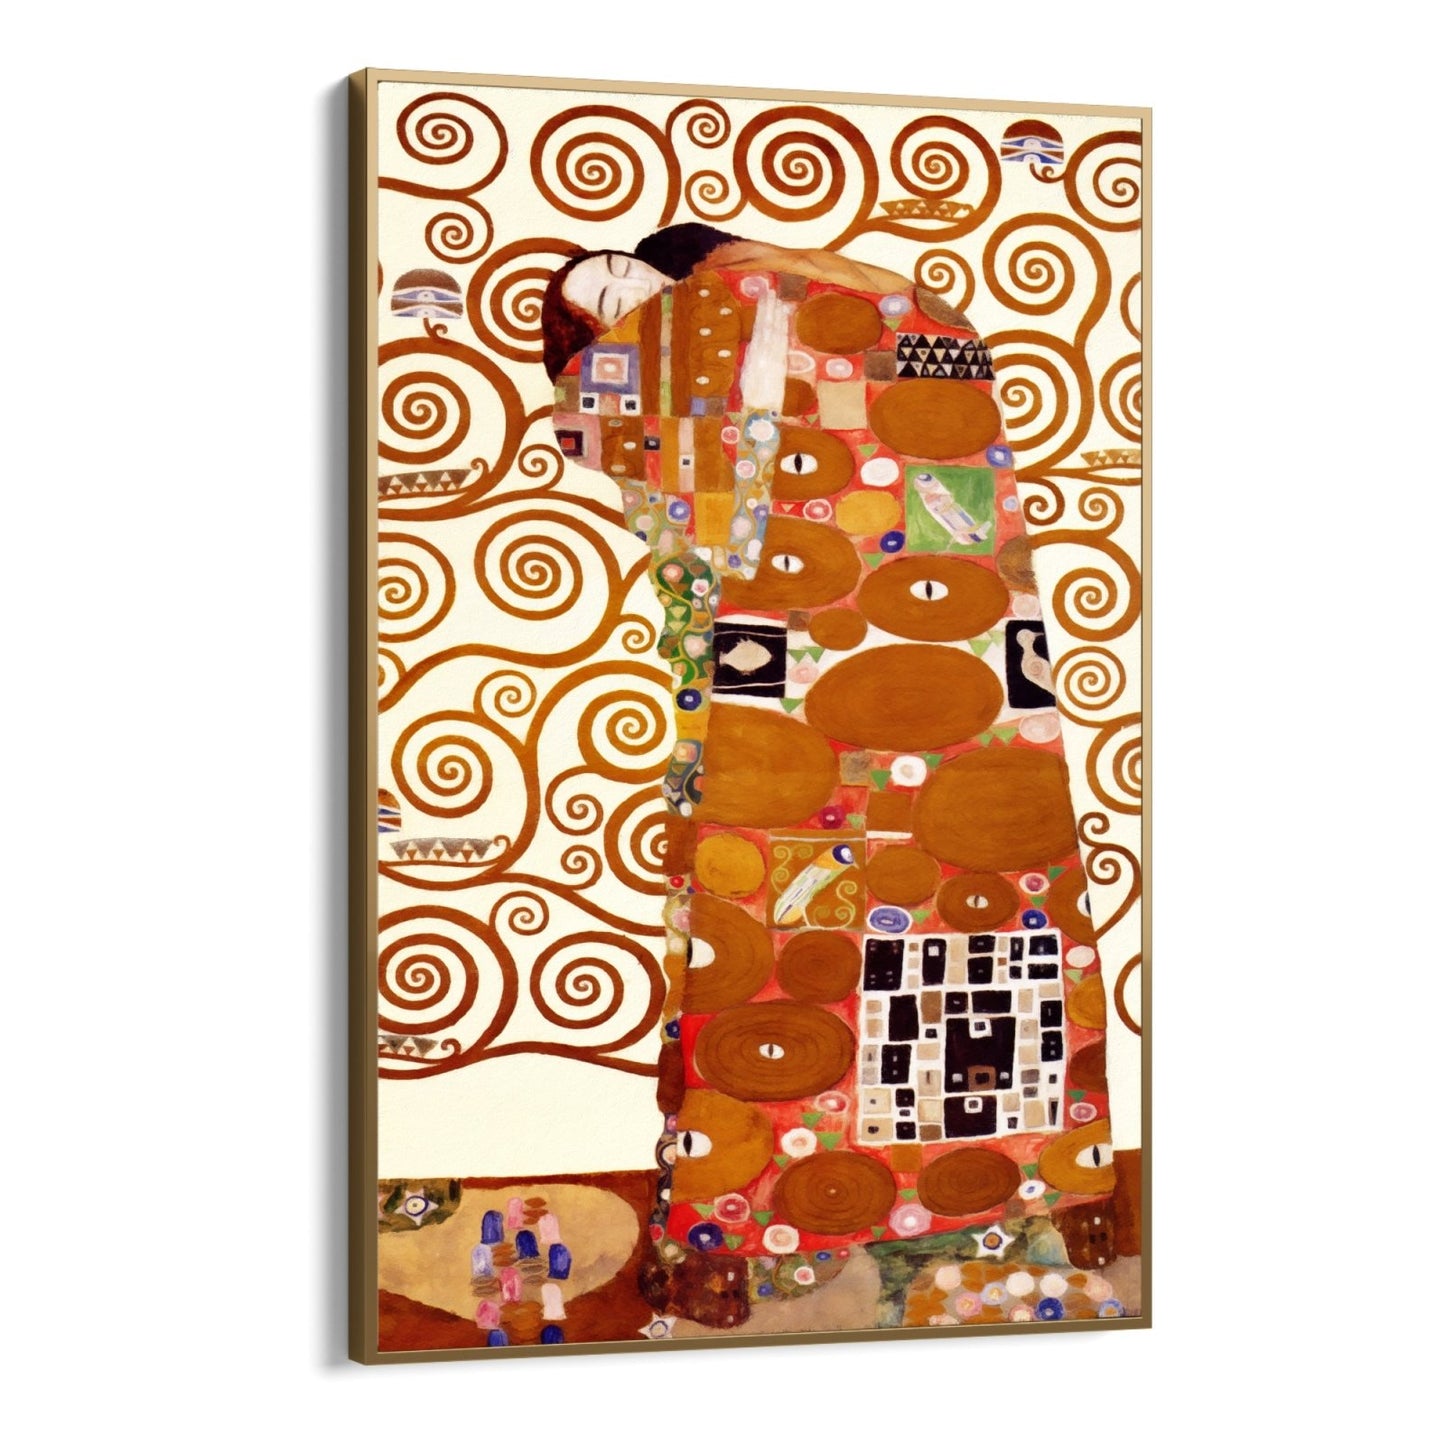 L'Abbraccio di Klimt